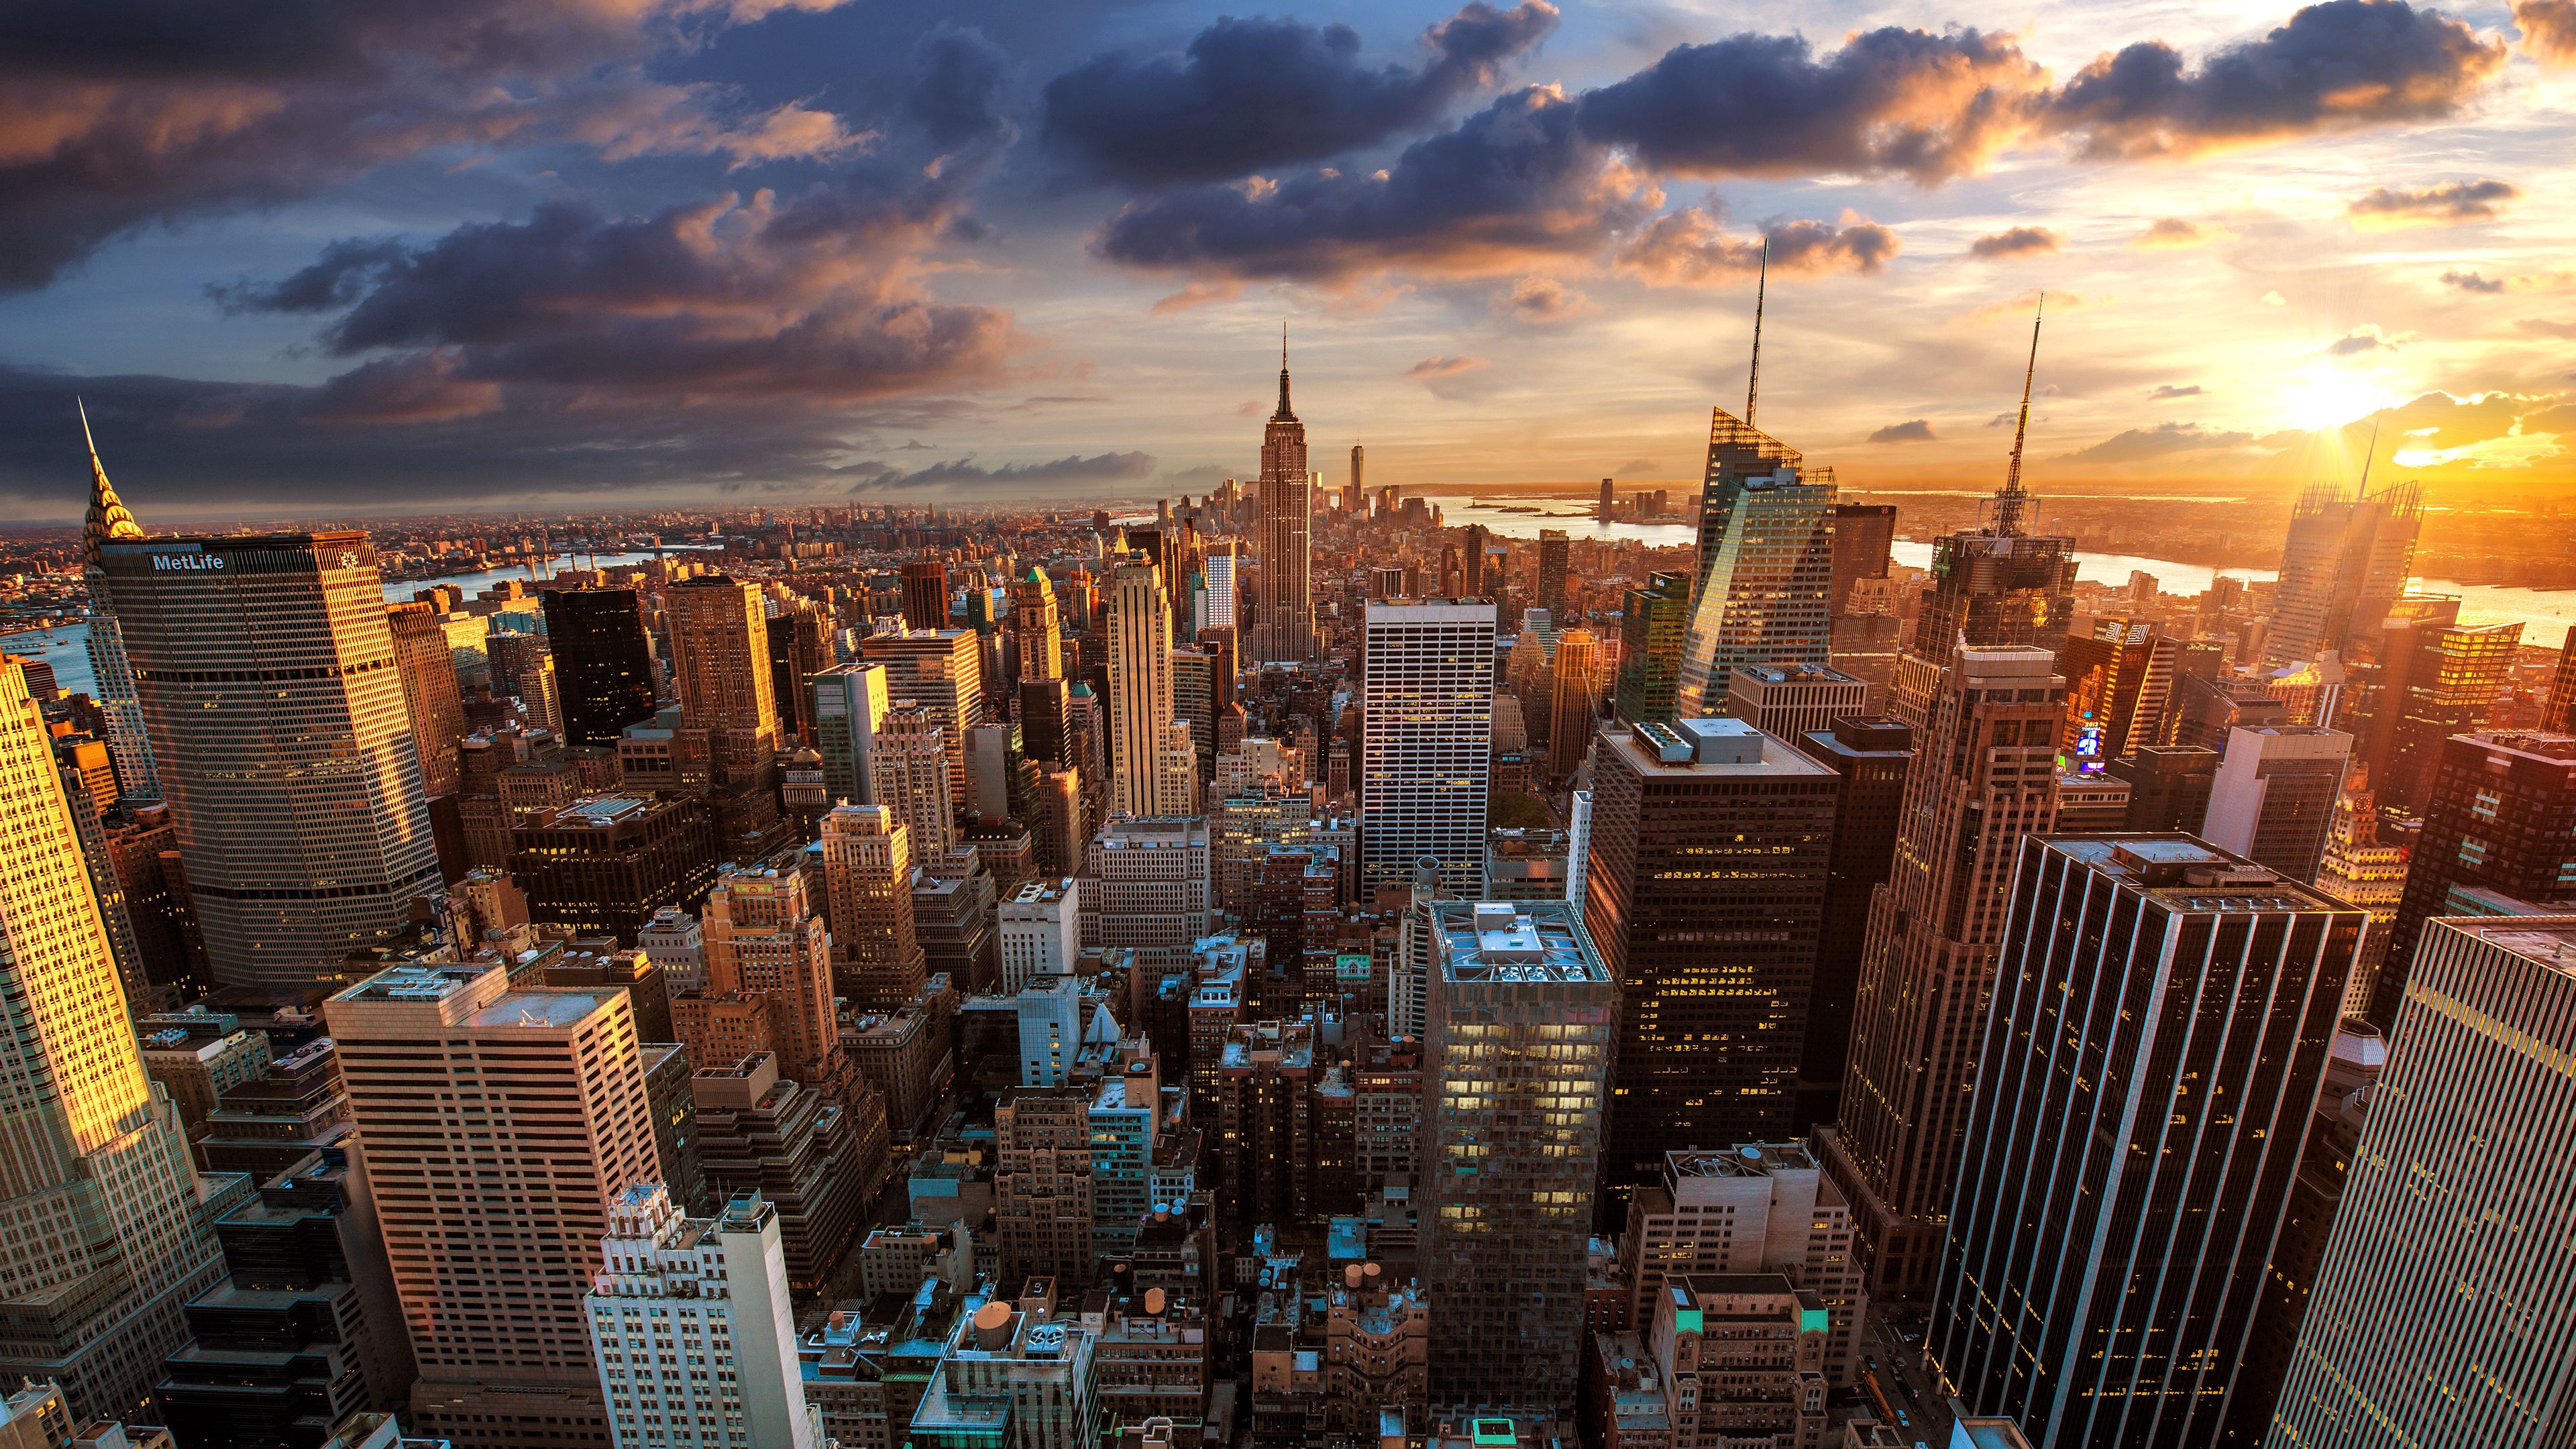 118696 скачать обои города, нью йорк, небоскребы, мегаполис, архитектура, город, вид сверху - заставки и картинки бесплатно